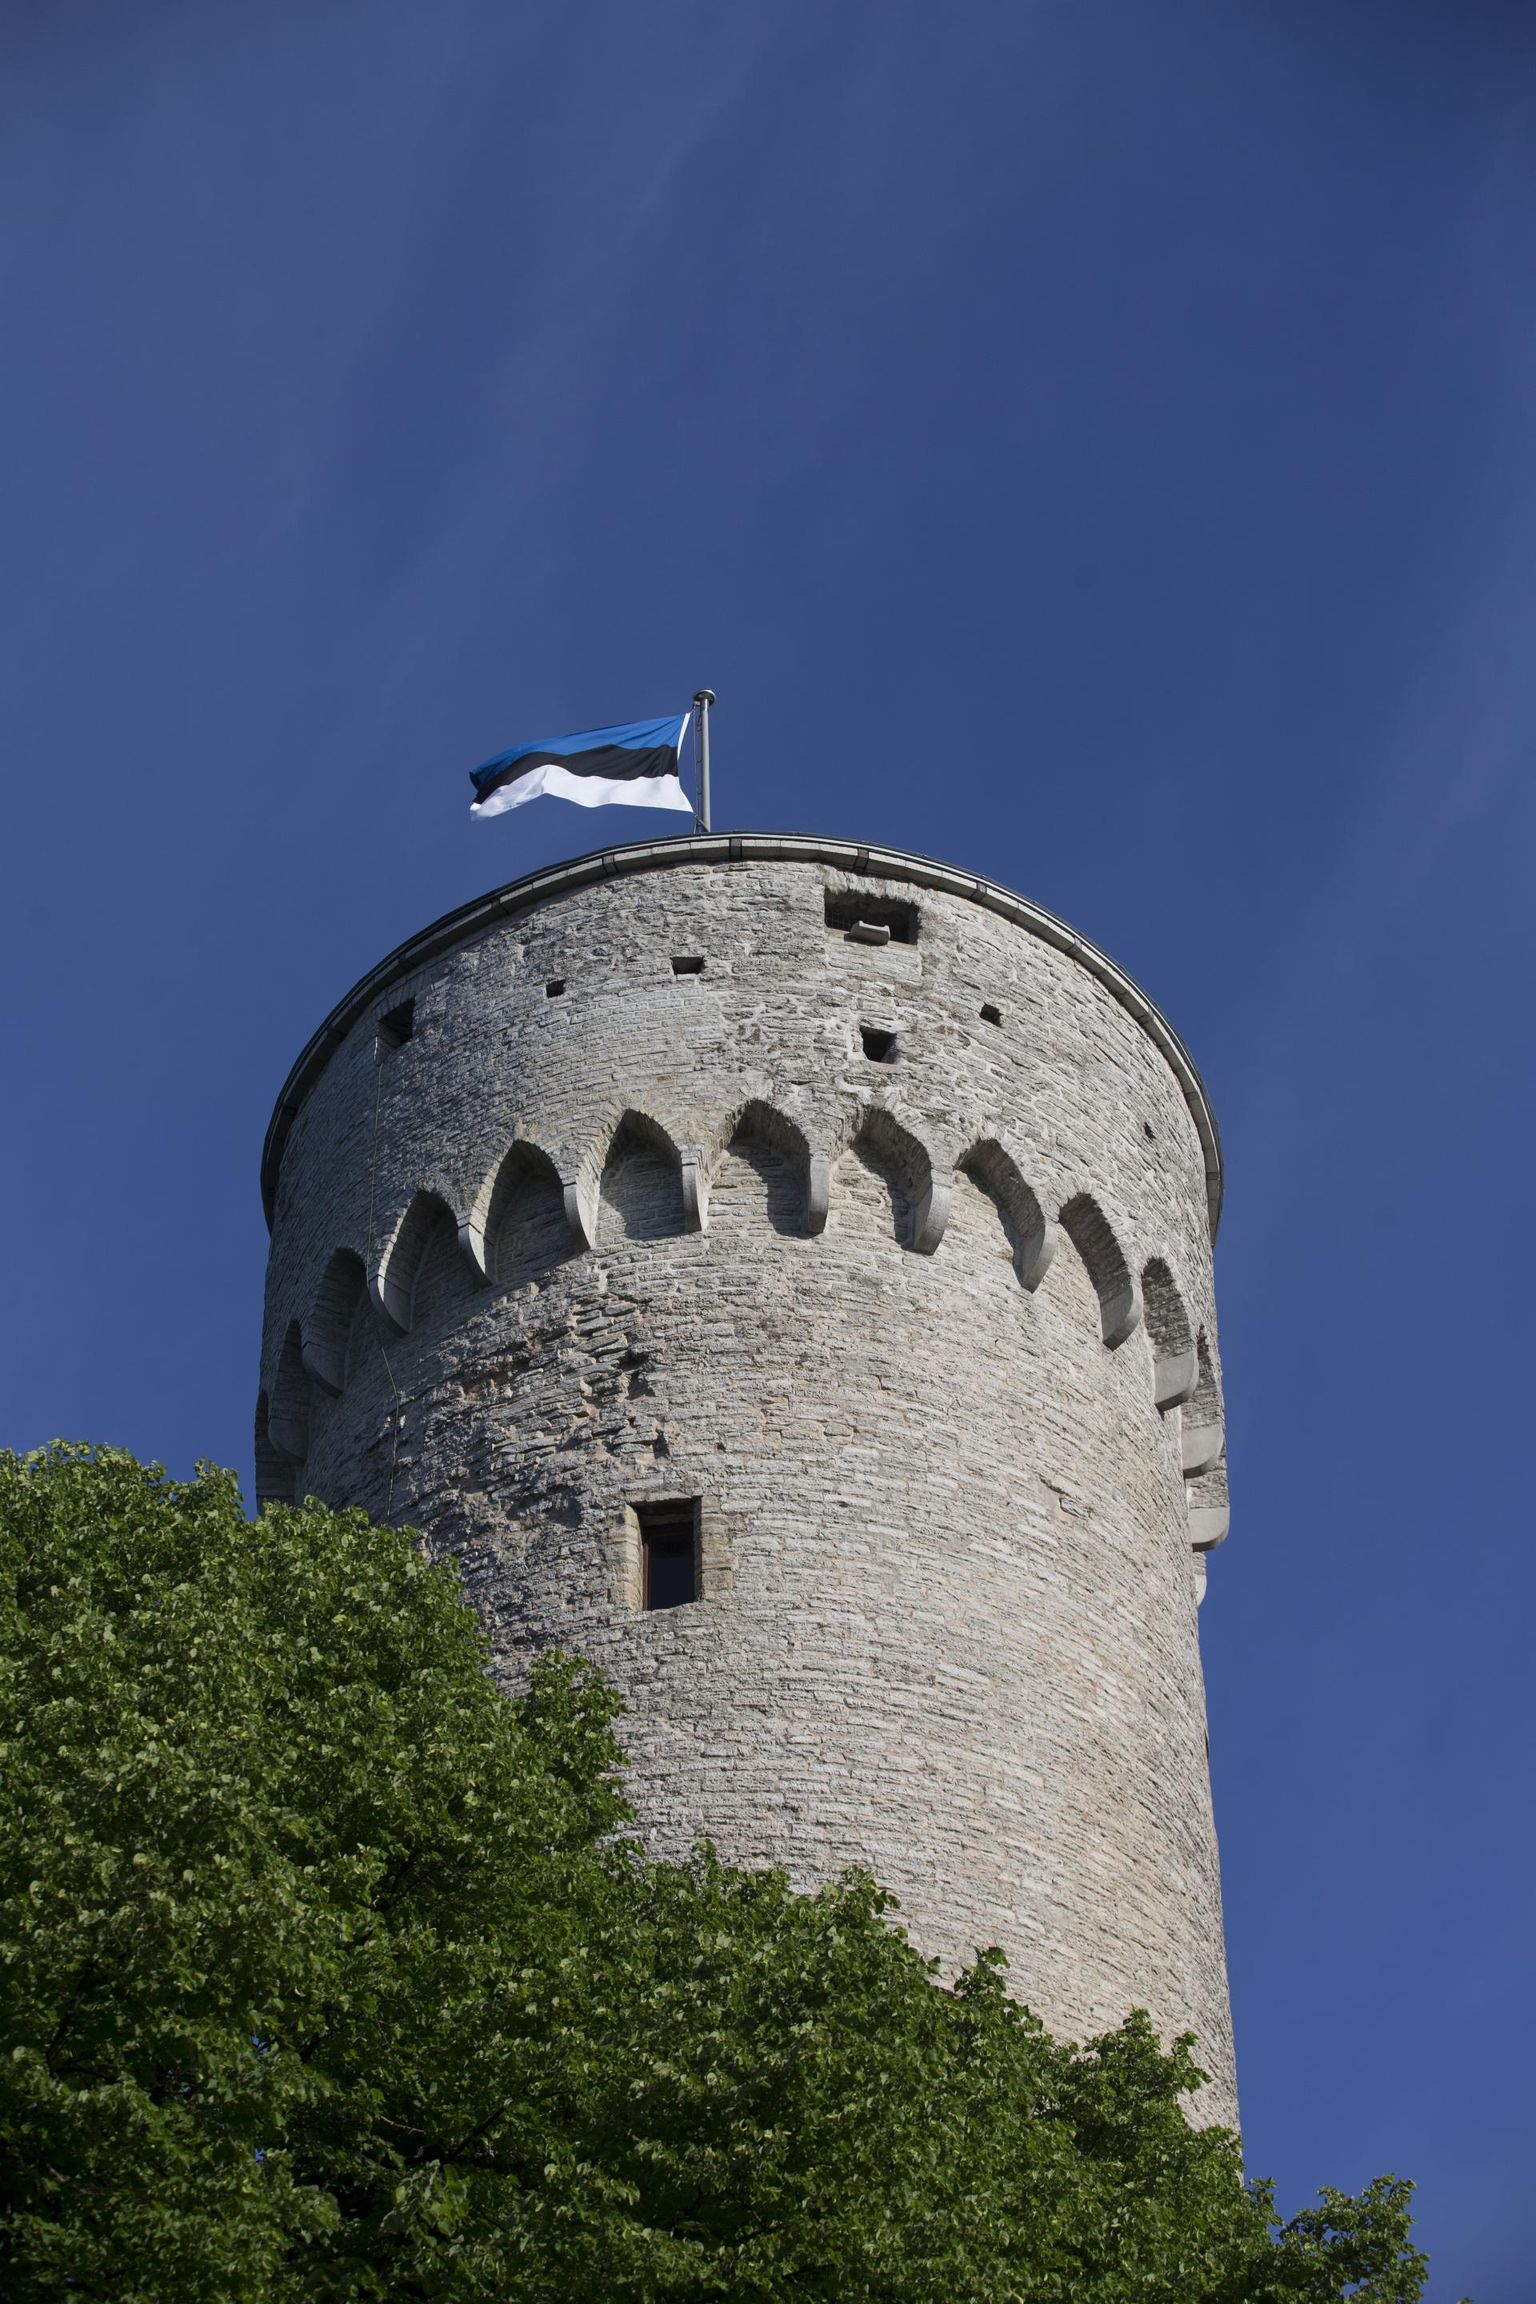 Eesti lipu päeval pannakse trikoloorid lehvima.